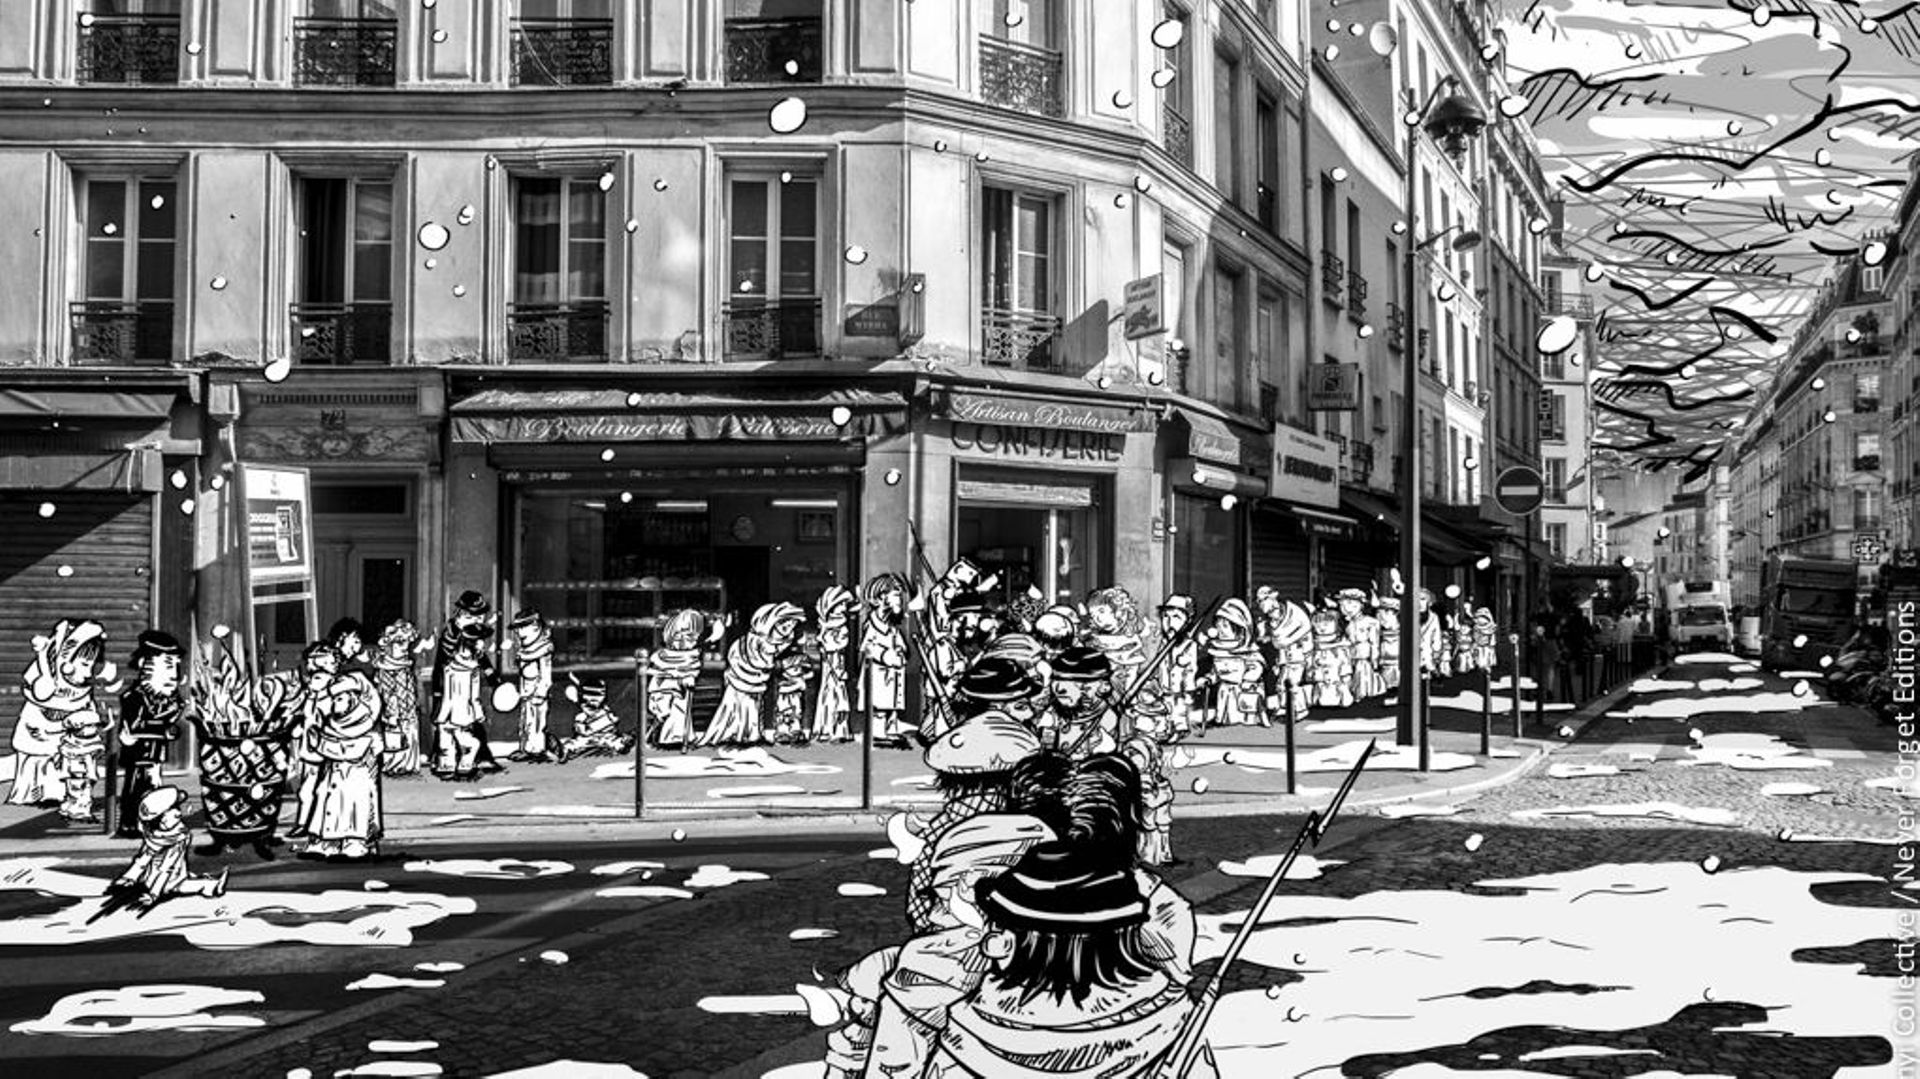 Manu Scordia et Thibaut Dramaix, les dessinateurs de ce projet, habitent et habillent les lieux importants de l’histoire de la Commune de Paris. 